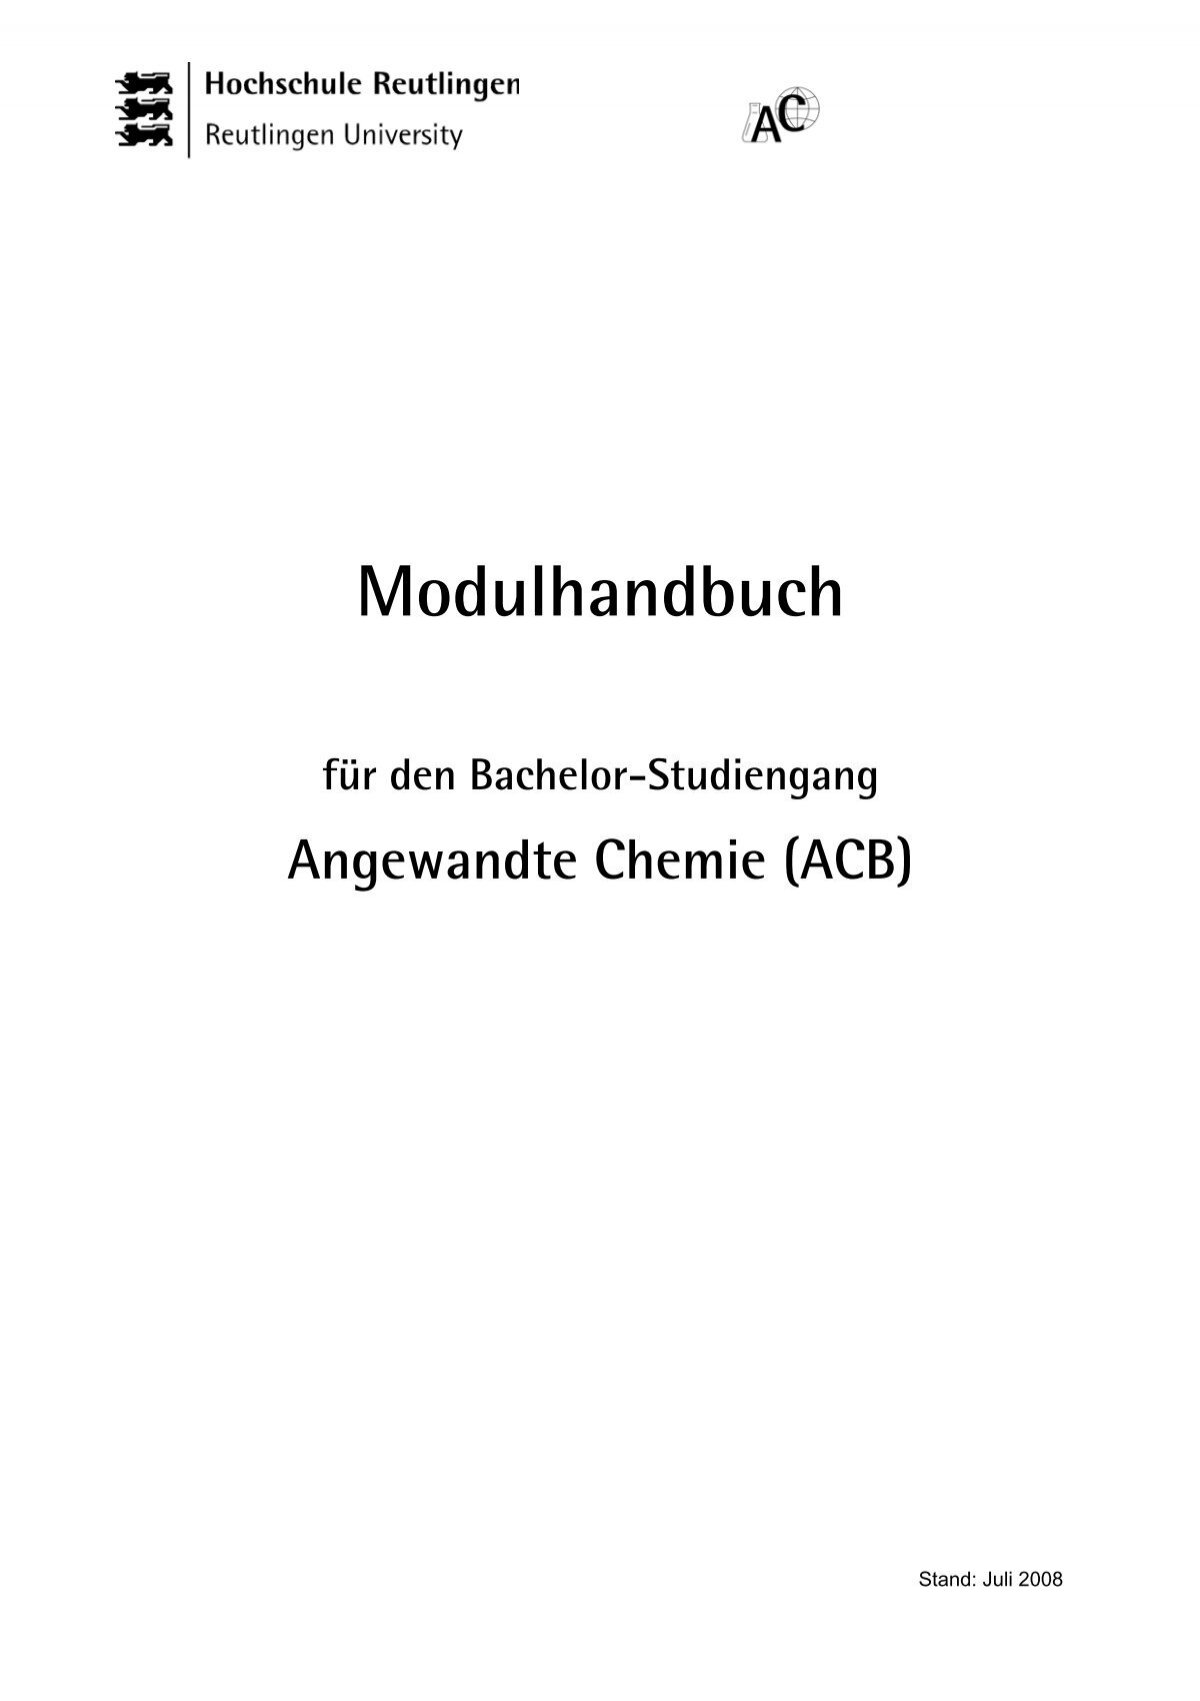 Modulhandbuch für den BachelorStudiengang Angewandte Chemie